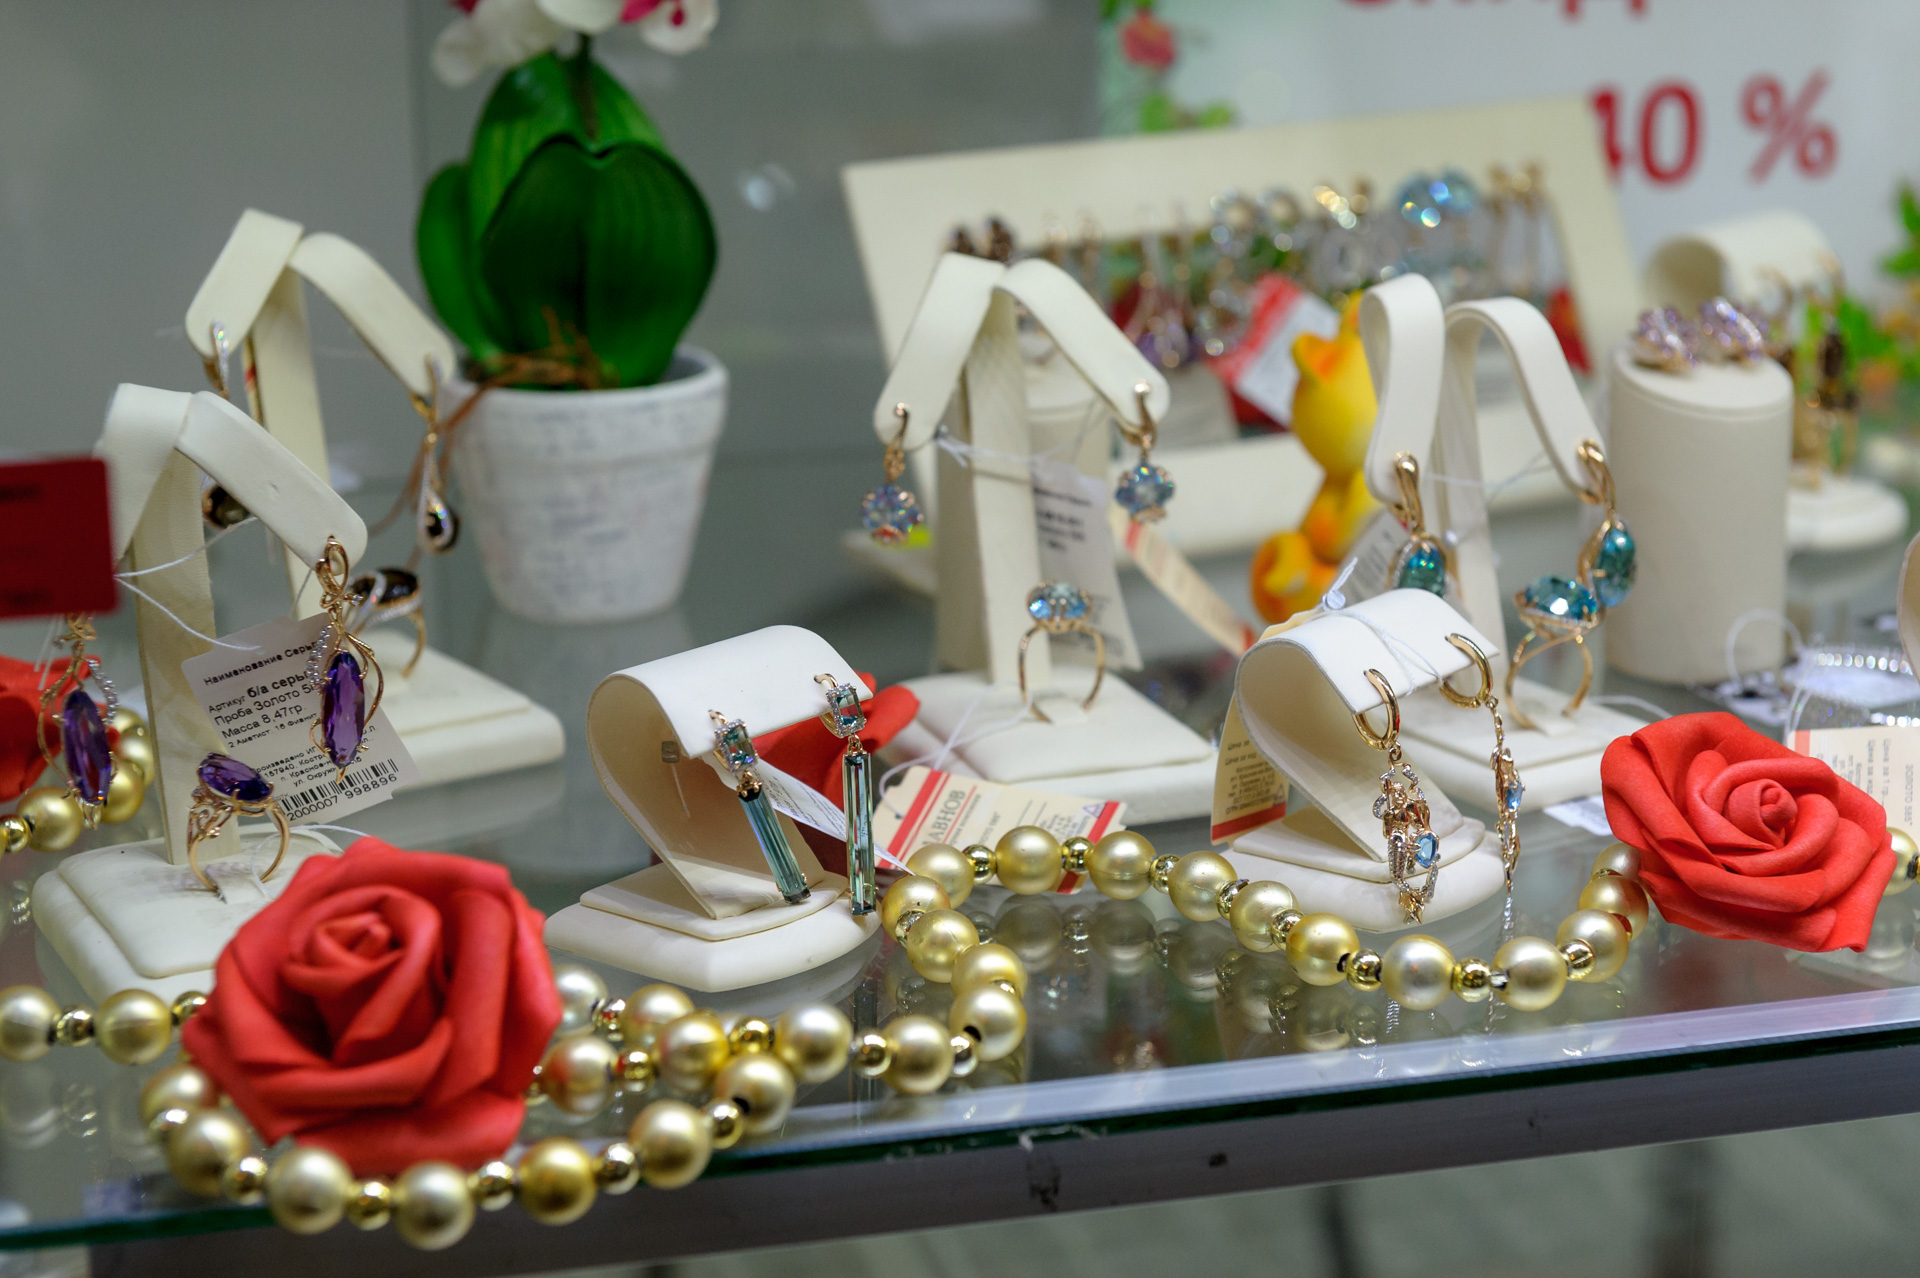 Exhibition-sale “Jewelery ranks”